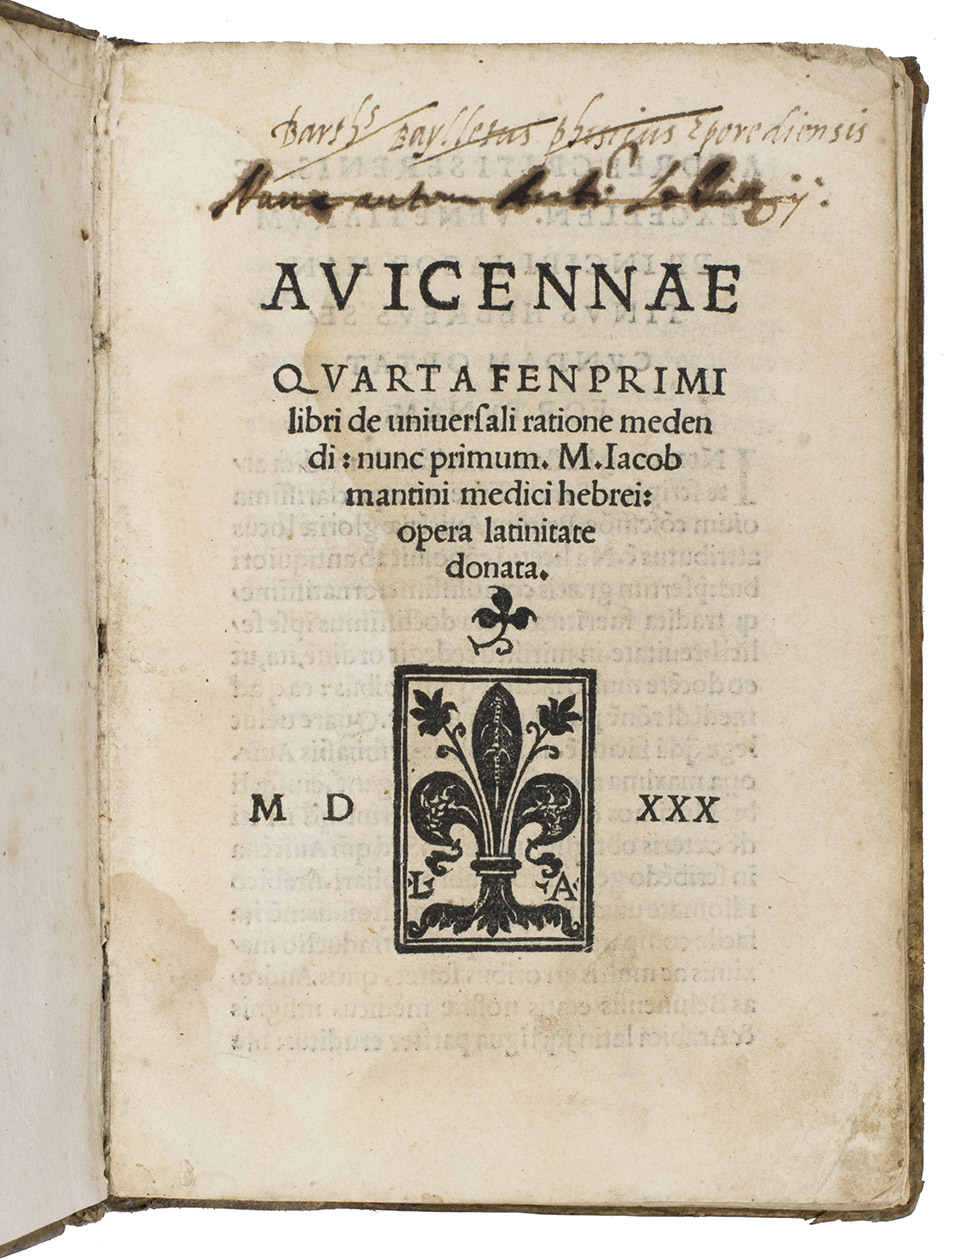 IBN SINA (AVICENNA) (and Jacob MANTINO, translator). - Avicennae quarta fen primi libri de universali ratione medendi: nunc primum. m. Iacob Mantini medici hebrei: opera Latinate donata.(colophon:) Venice, Lucantonio Giunti, 8 April 1530. 8vo. With Giunti's printer's device on the title page (a Florentine lily with the L. A. initials). Later vellum with more recent end leaves.